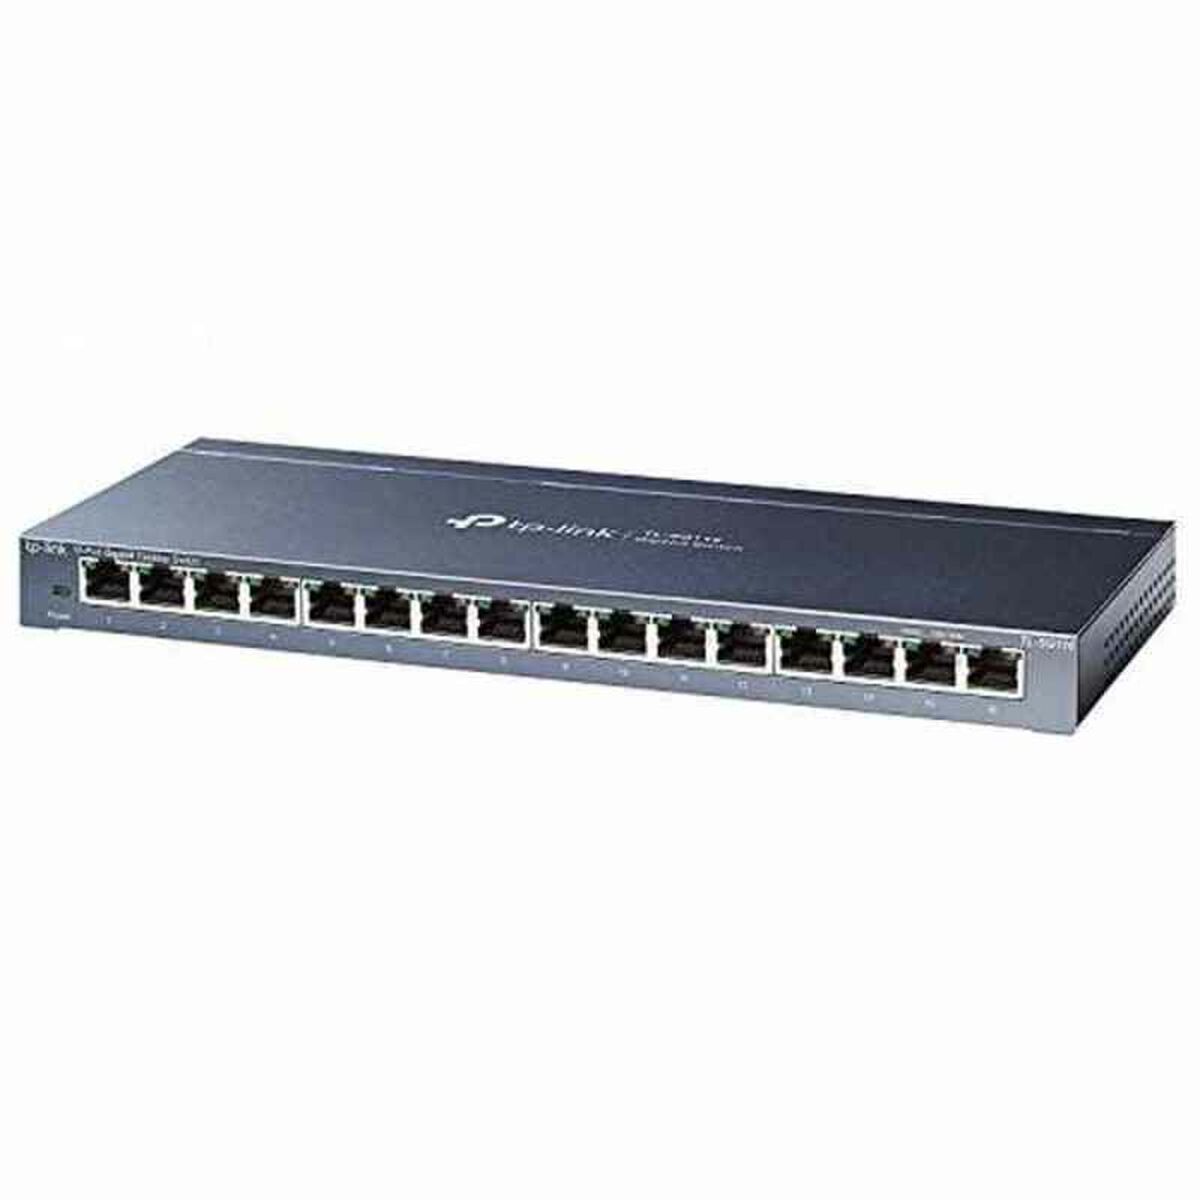 Osta tuote Kaappikytkin TP-Link TL-SG116 RJ45 Gigabit Ethernet verkkokaupastamme Korhone: Tietokoneet & Elektroniikka 10% alennuksella koodilla KORHONE